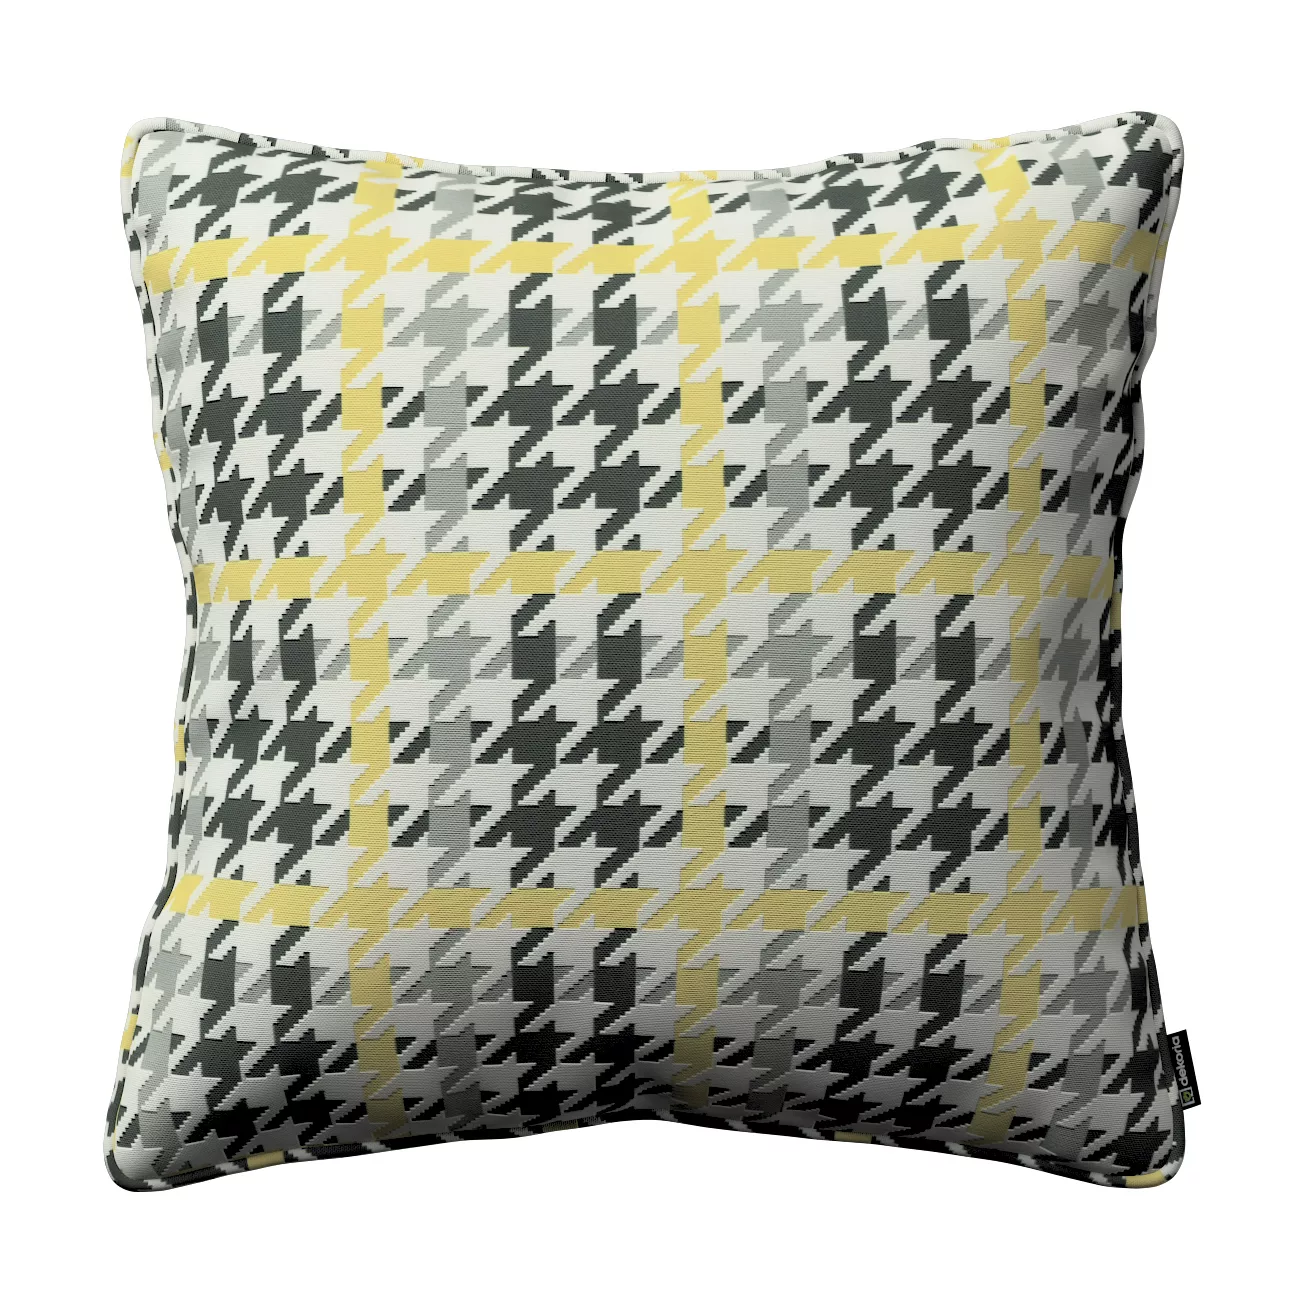 Kissenhülle Gabi mit Paspel, gelb-schwarz, 45 x 45 cm, SALE (137-79) günstig online kaufen